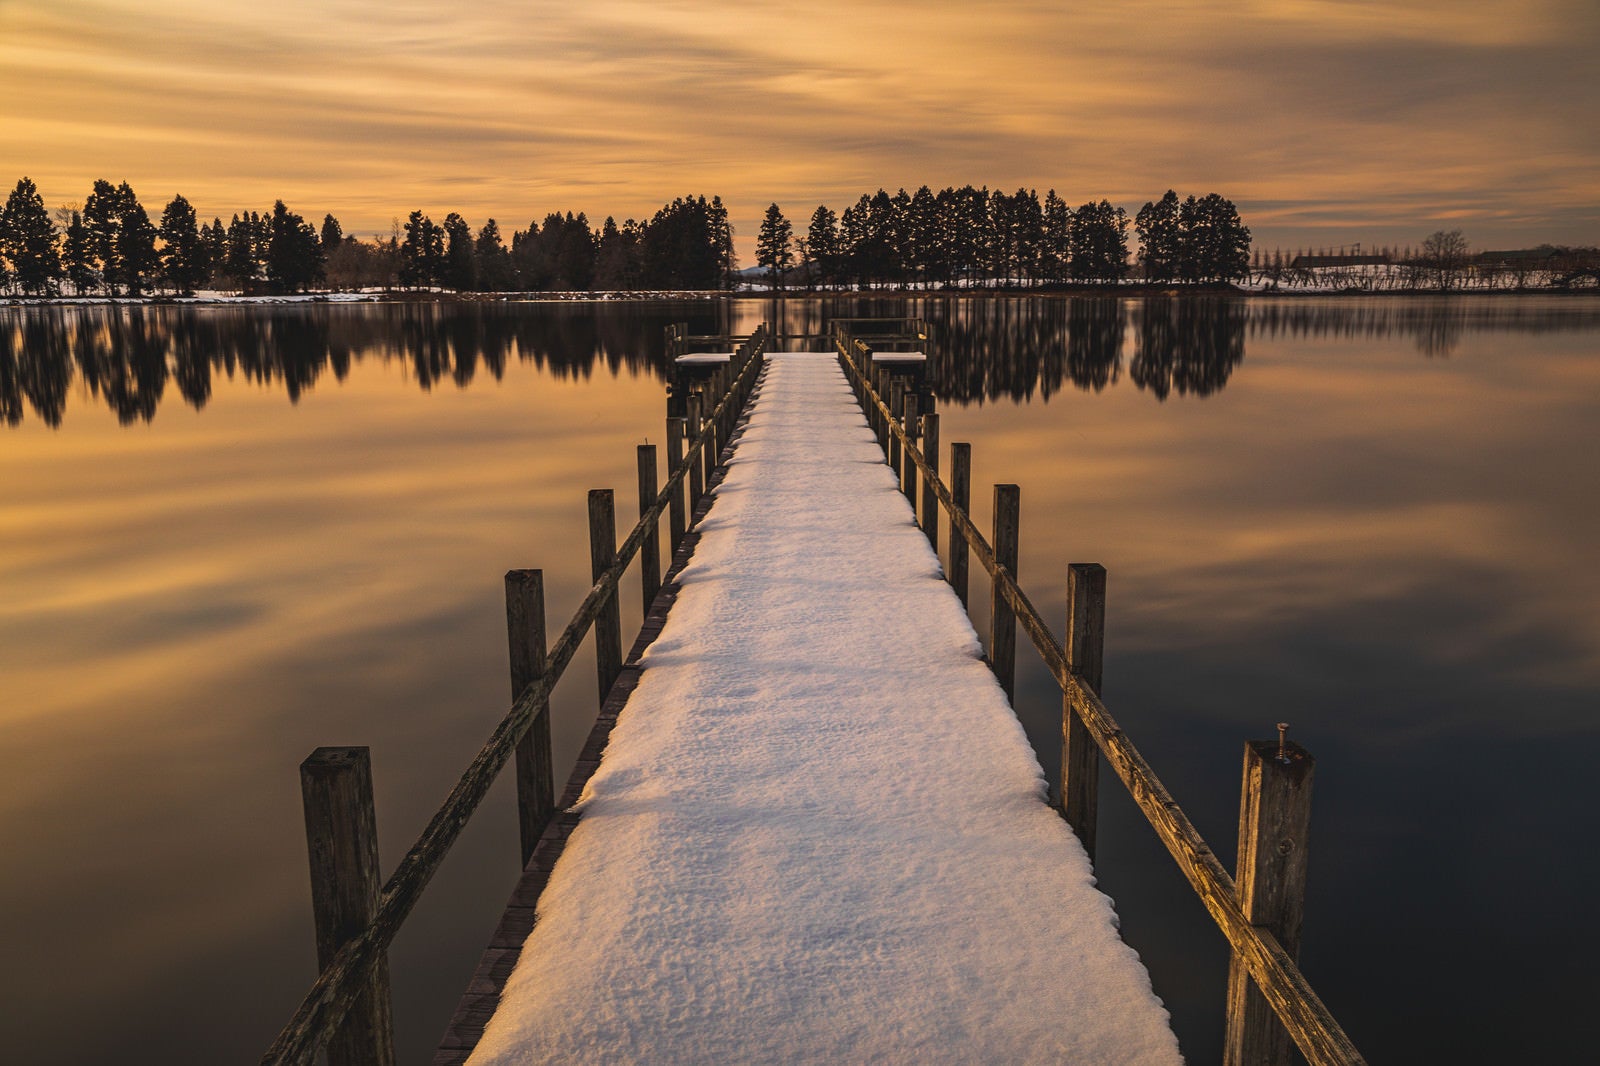 「夕焼けに染まる湖面と残雪の桟橋」の写真